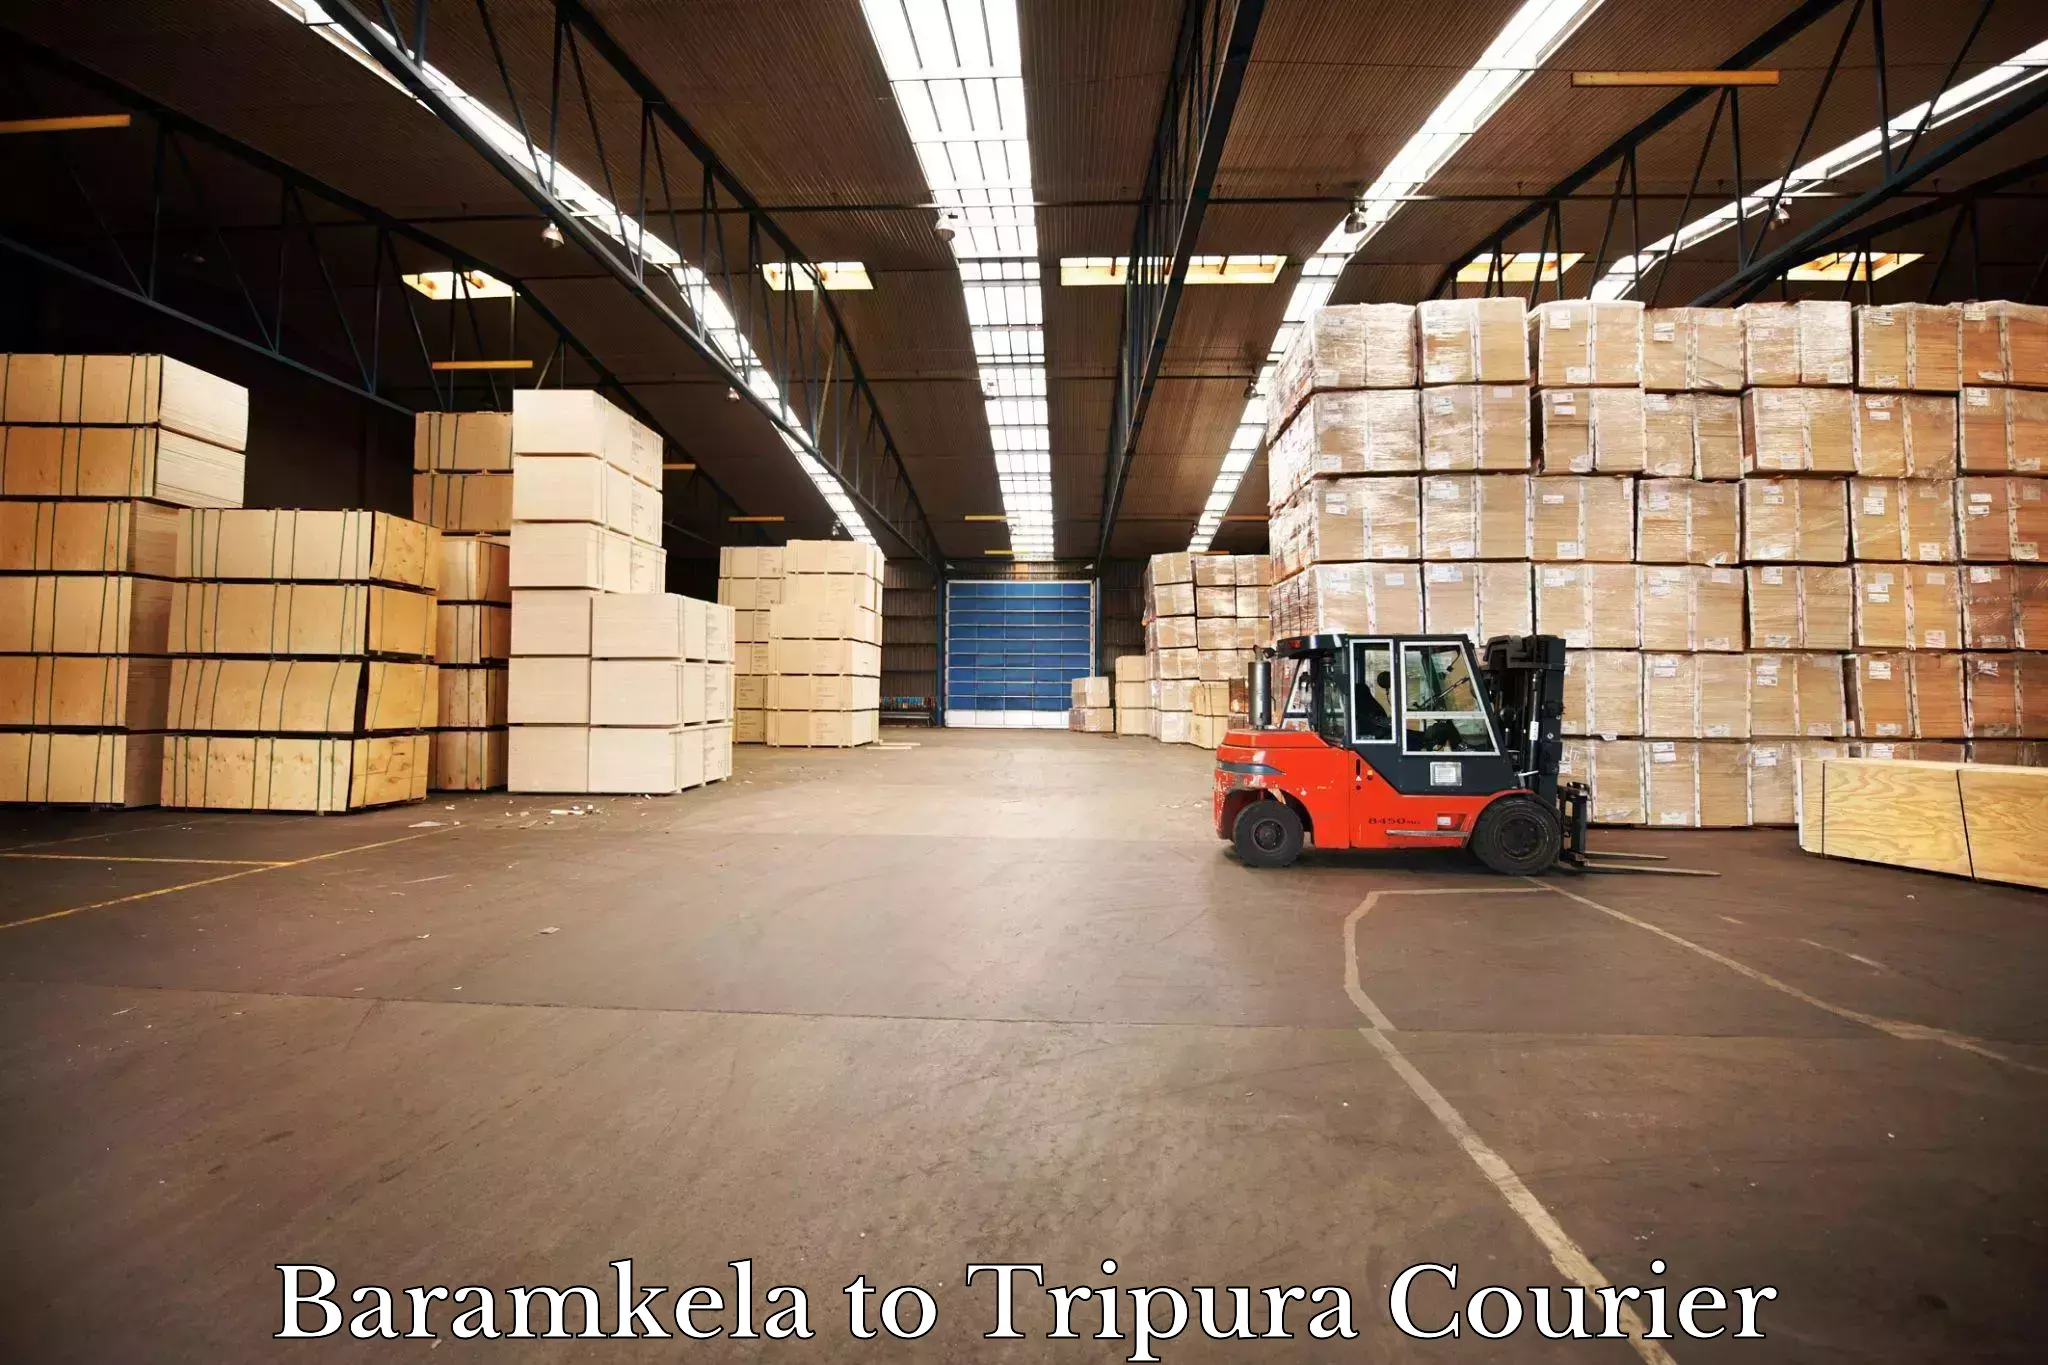 Courier service partnerships Baramkela to Udaipur Tripura